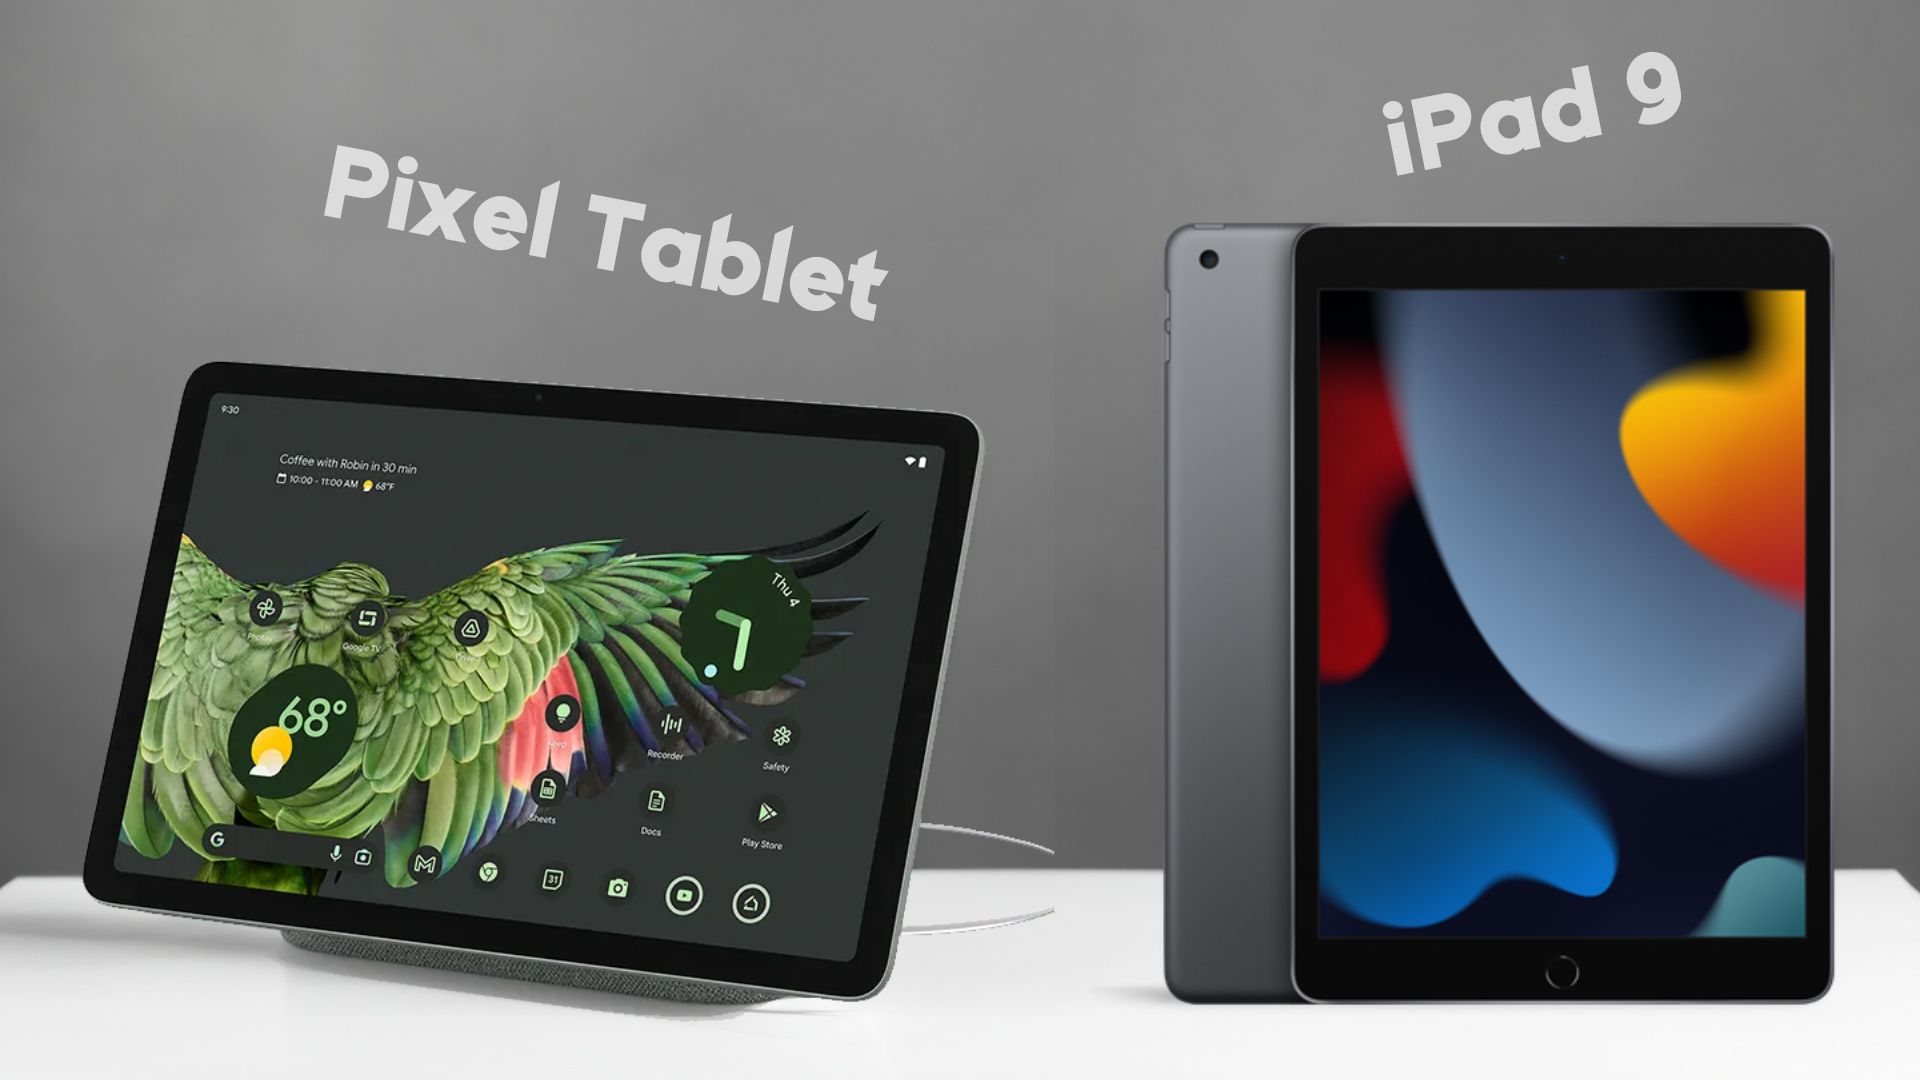 Pixel Tablet vs iPad 9